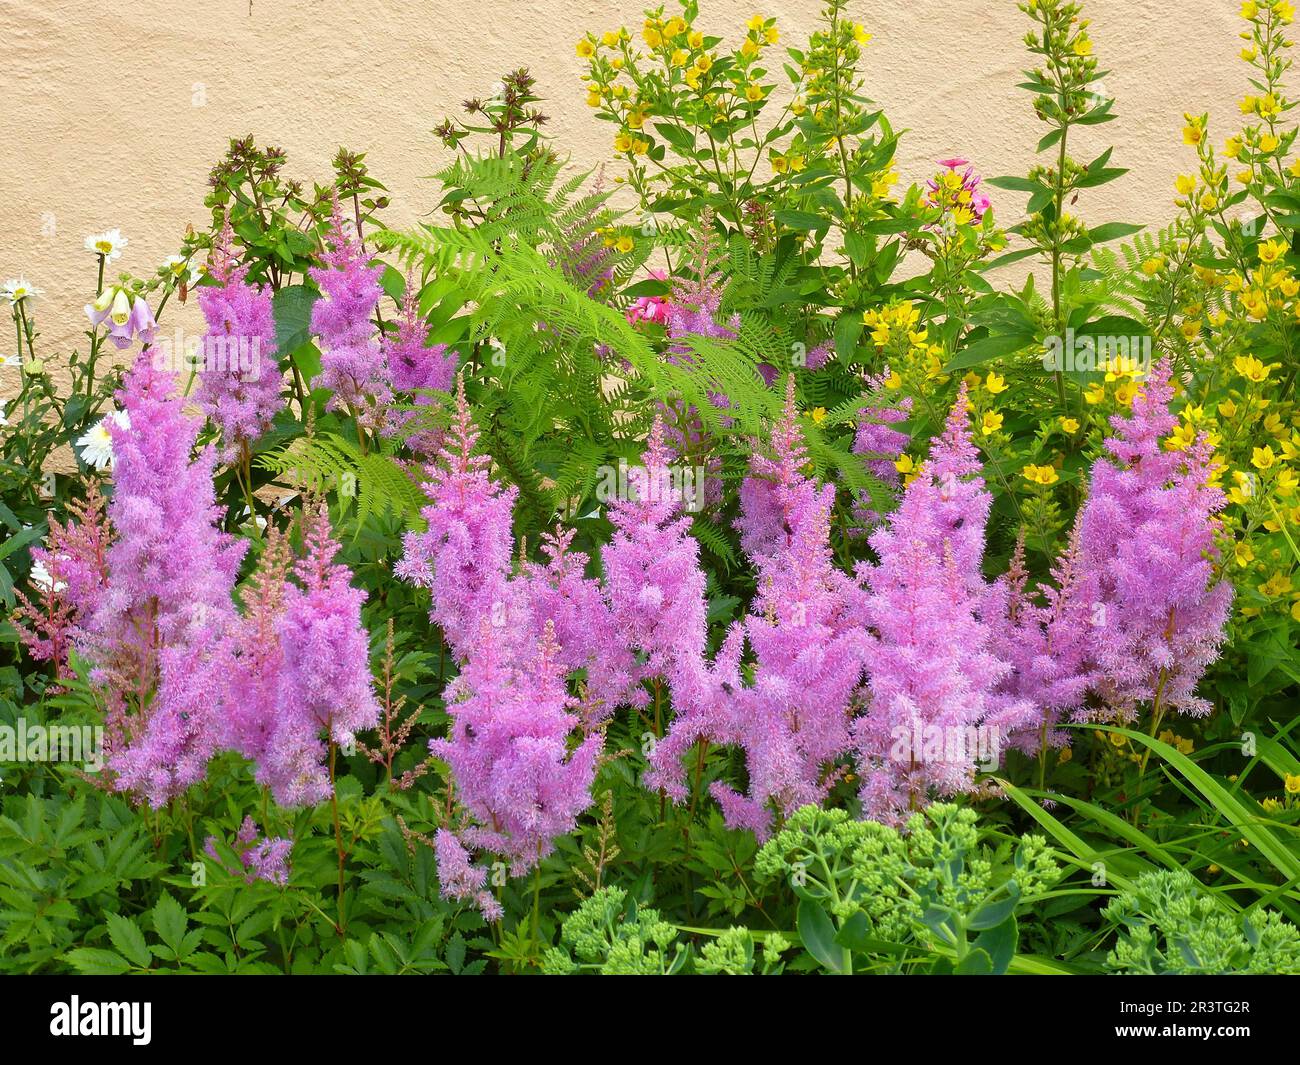 Astilbe flowering in the garden, Prachtspieren (Astilbe) Stock Photo